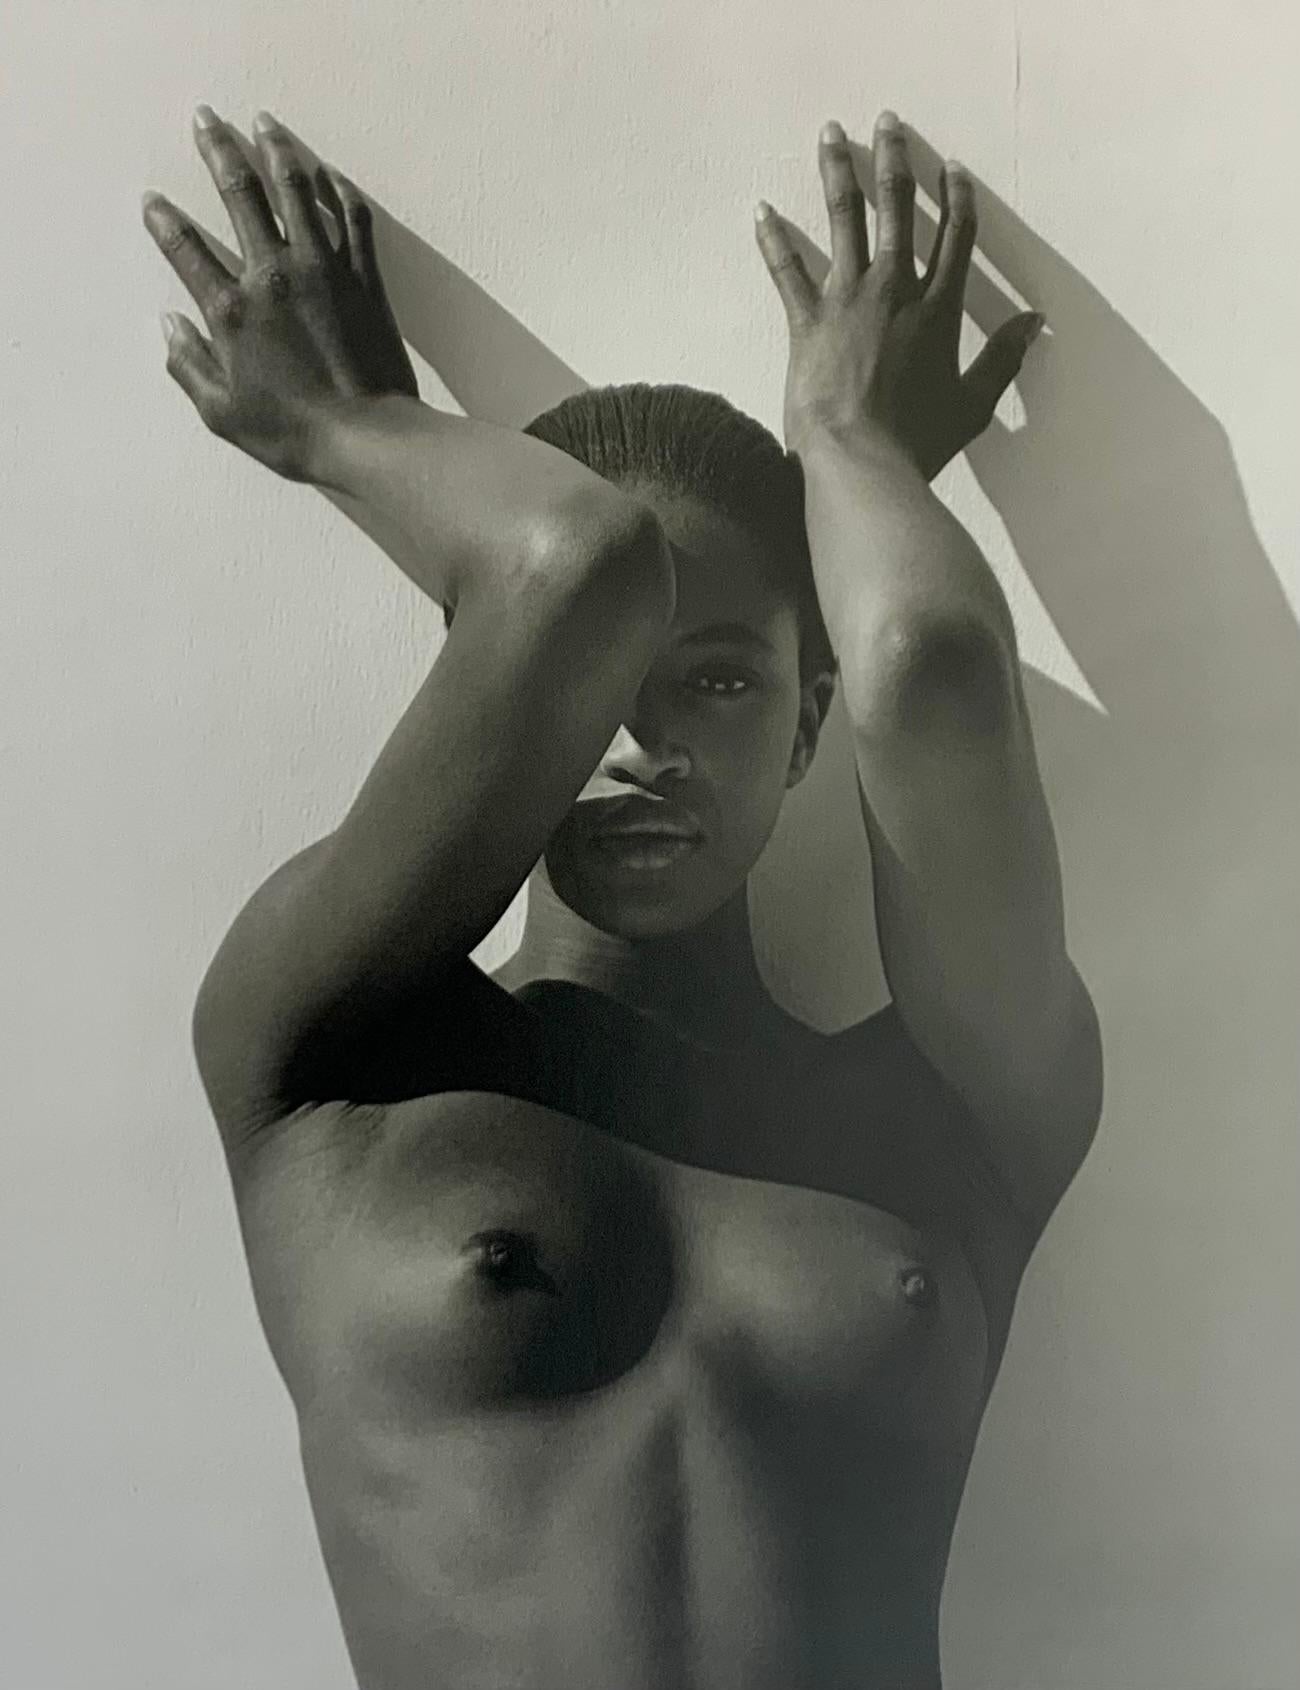 Naomi mit erhobenen Armen Los Angeles 1988
von Herb Ritts

Das weltbekannte britische Supermodel Naomi Campbell posiert mit erhobenen Armen vor der Linse.

Ungerahmt
Mattiert
Gesamtgröße: 12 x 16" Zoll / 31 x 41 cm
Bildgröße: 8,25" x 10,25'' Zoll /